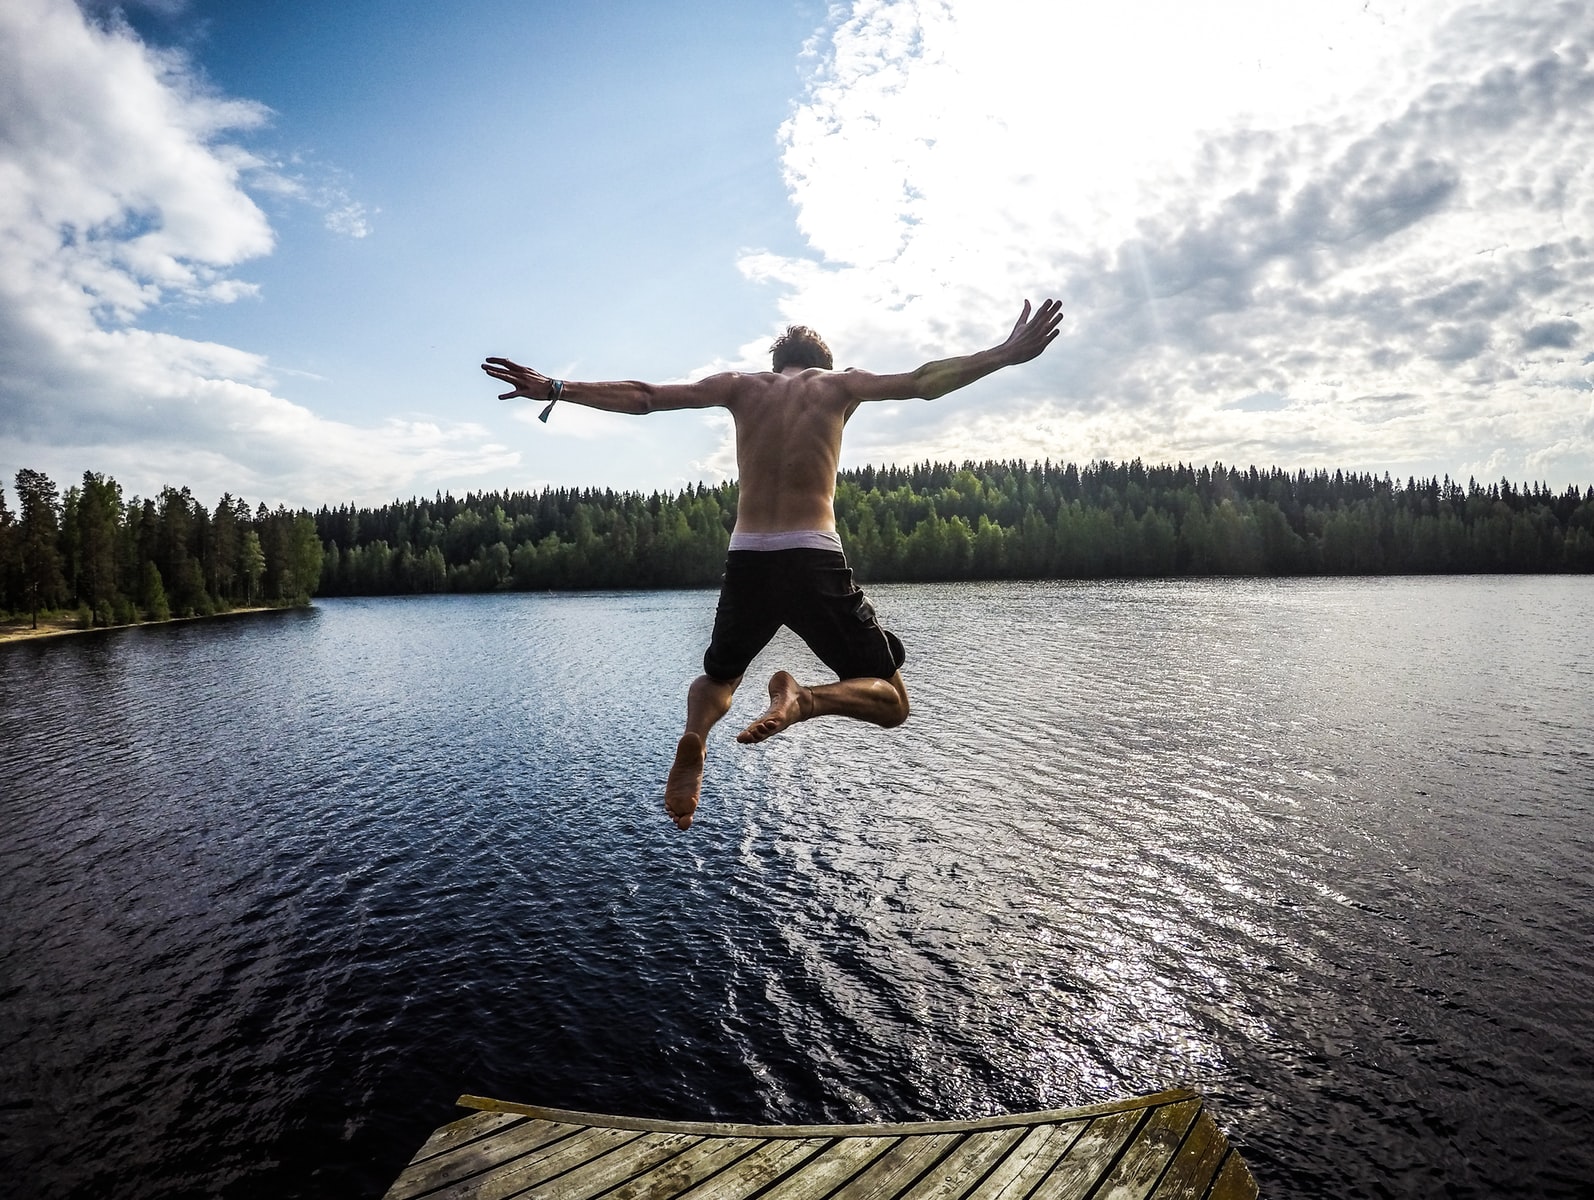 man jumping through body of water